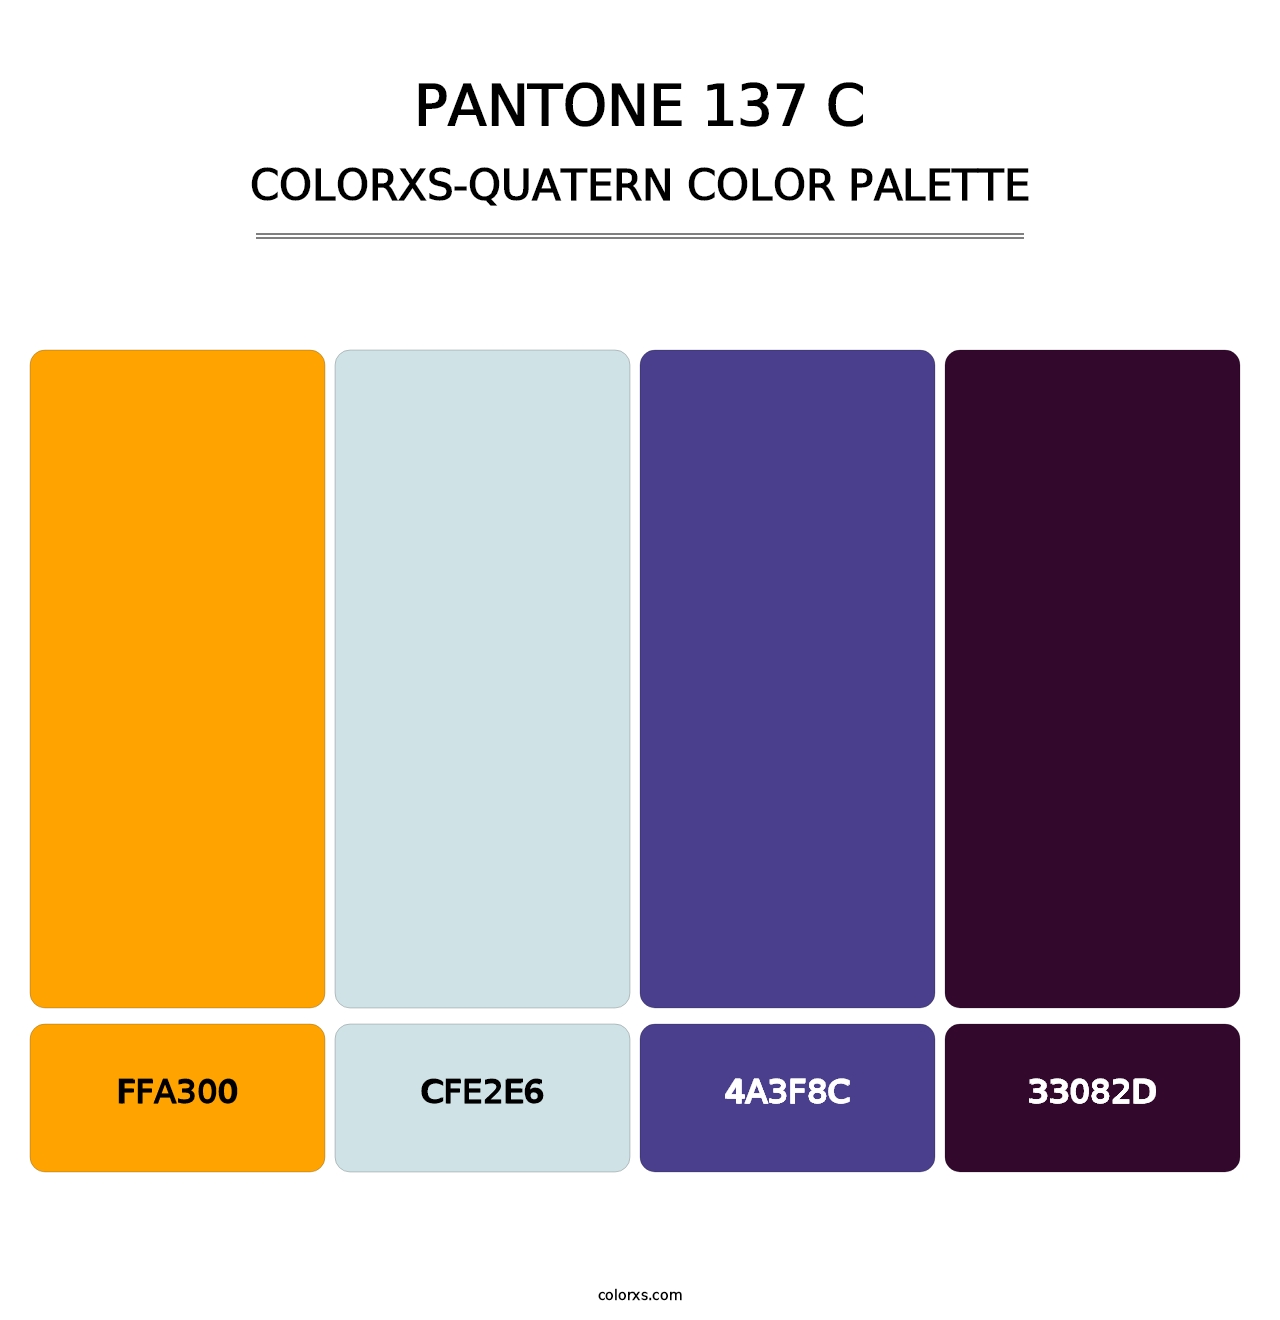 PANTONE 137 C - Colorxs Quatern Palette